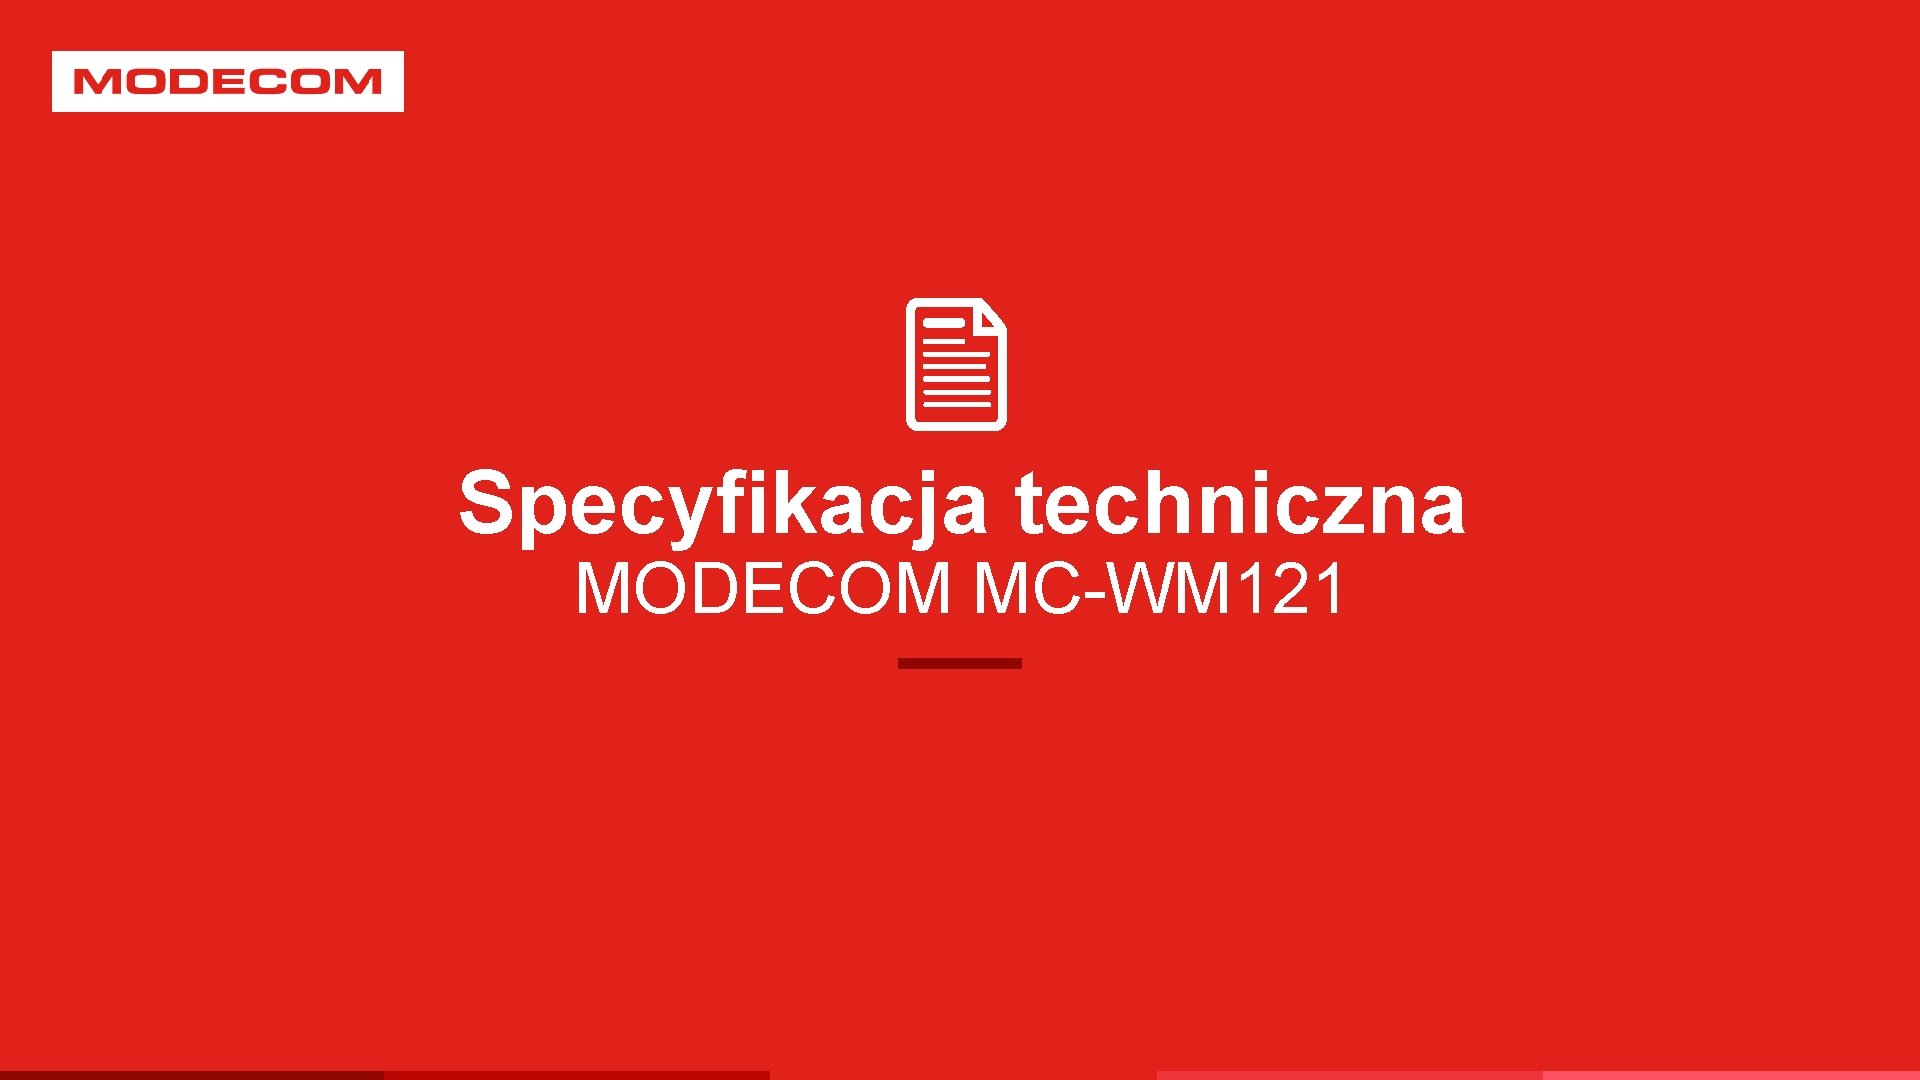 Specyfikacja techniczna MODECOM MC-WM 121 